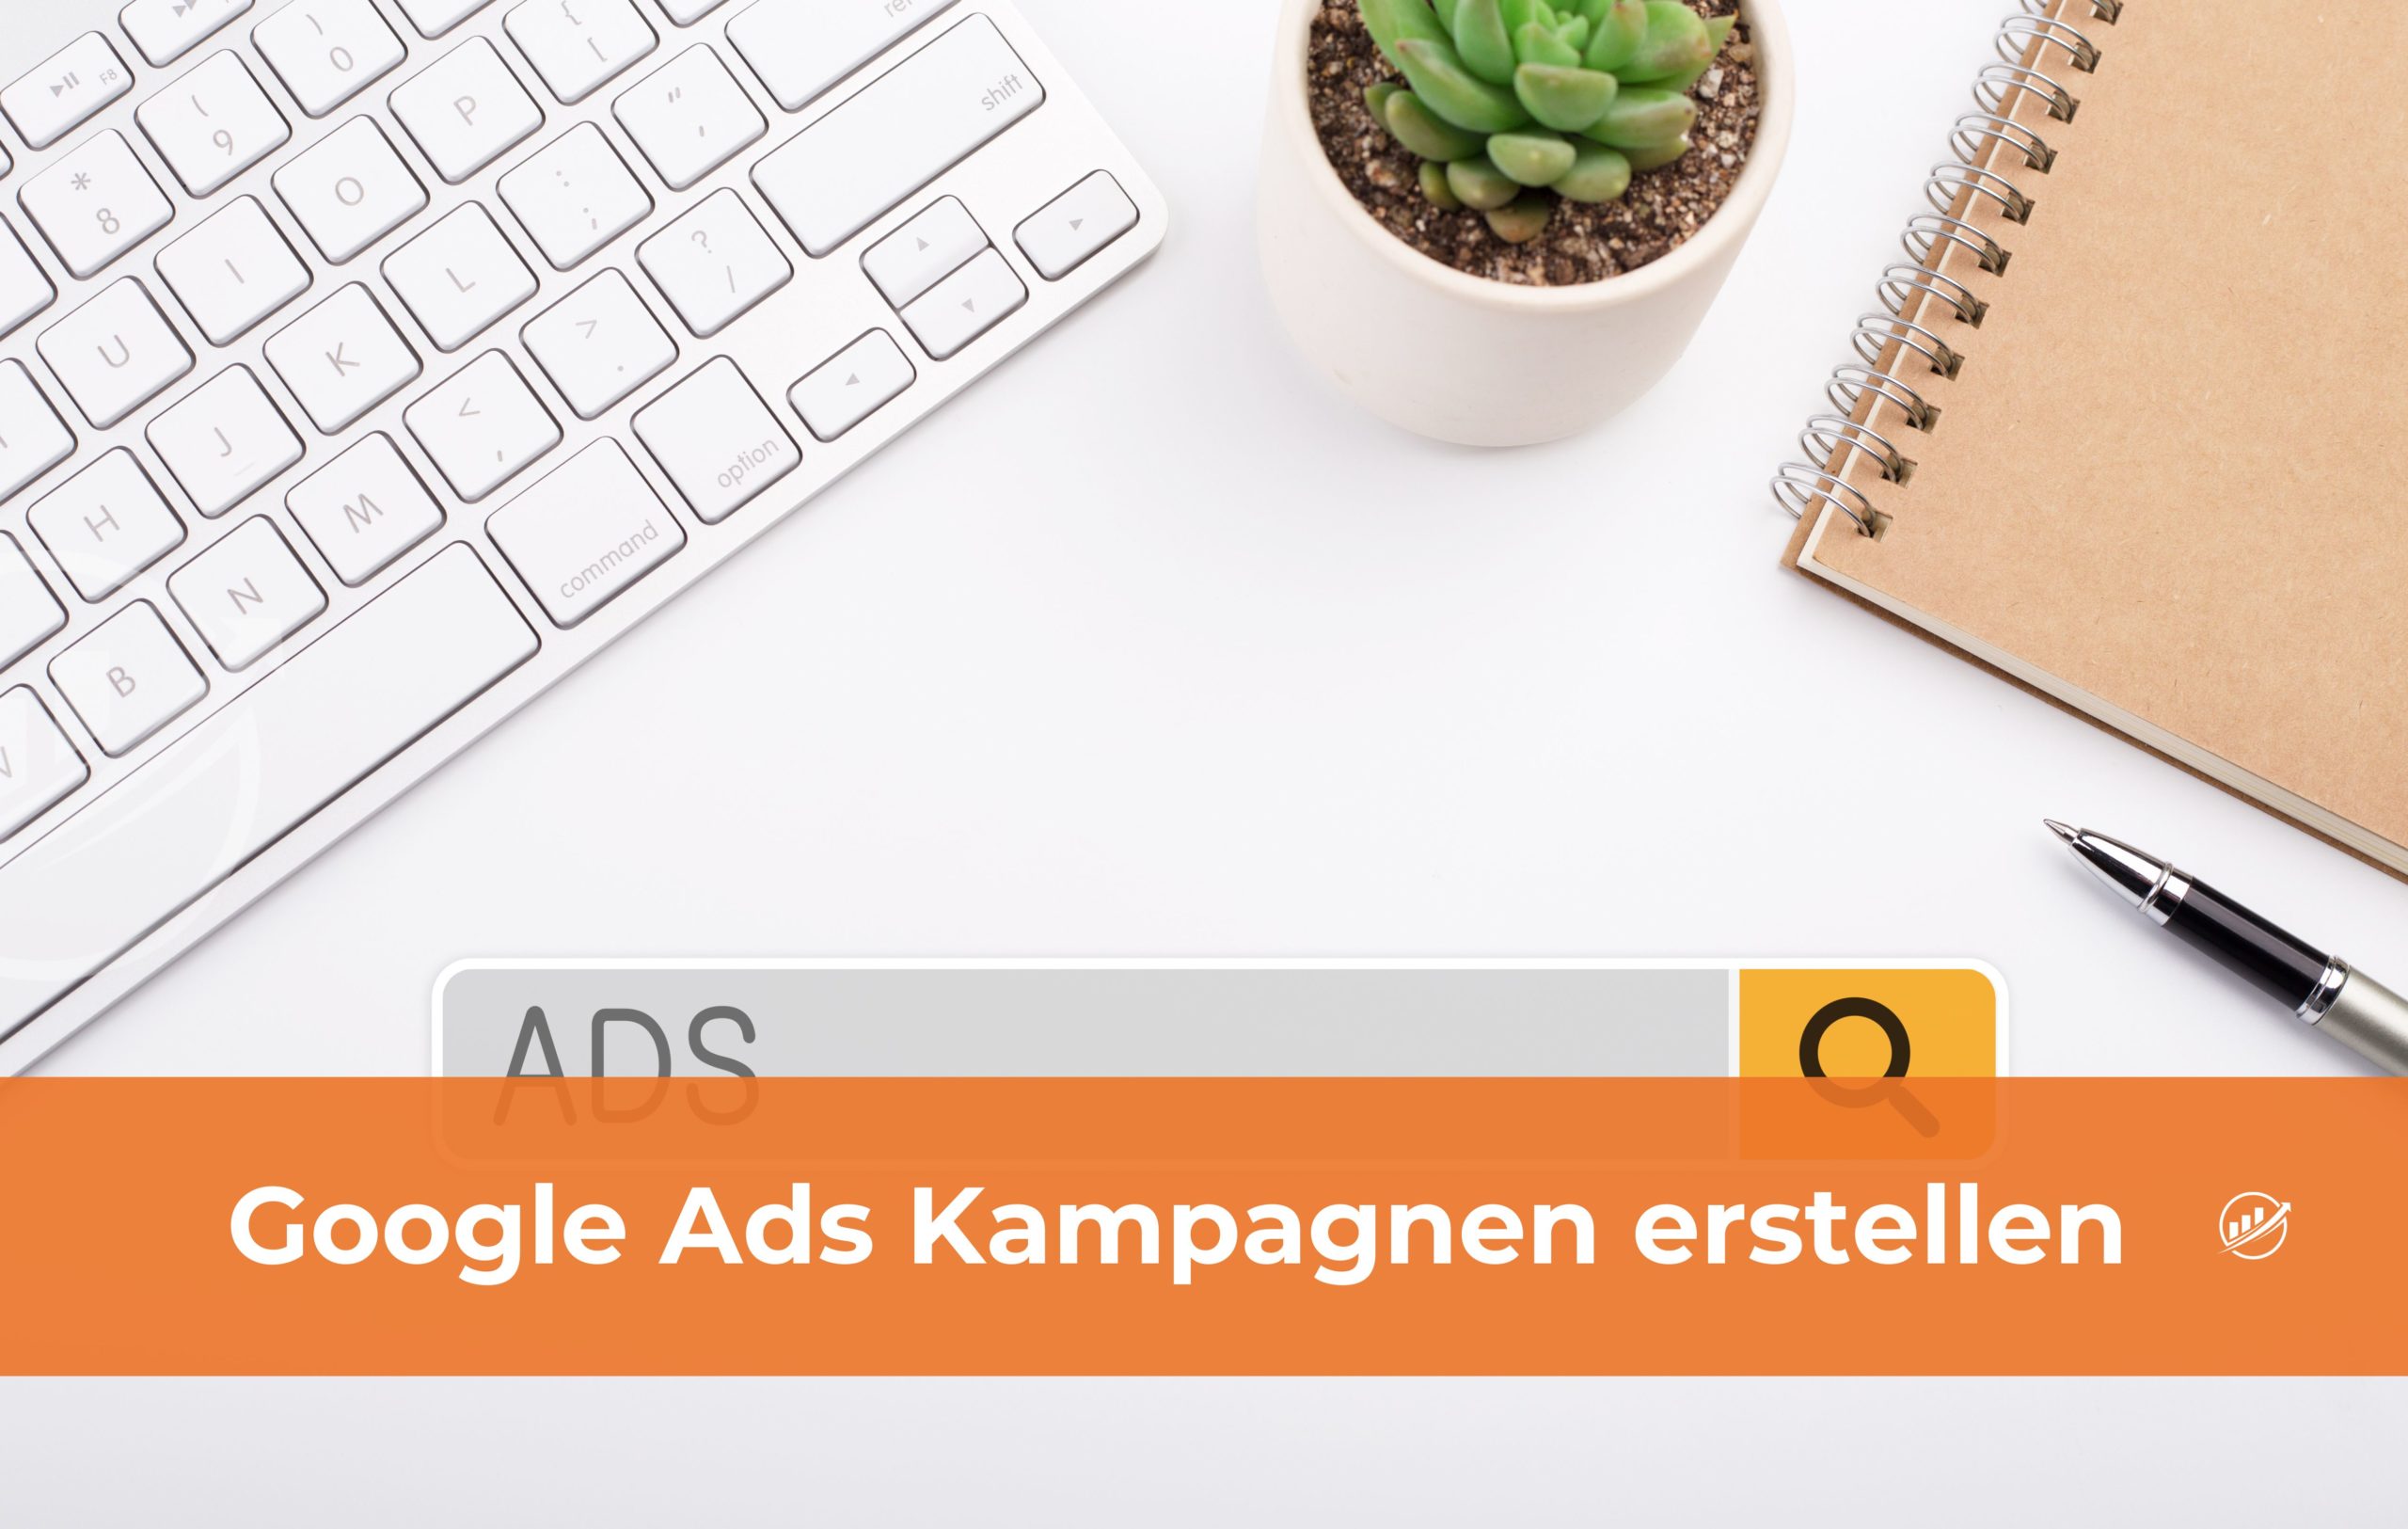 Google Ads Kampagnen erstellen